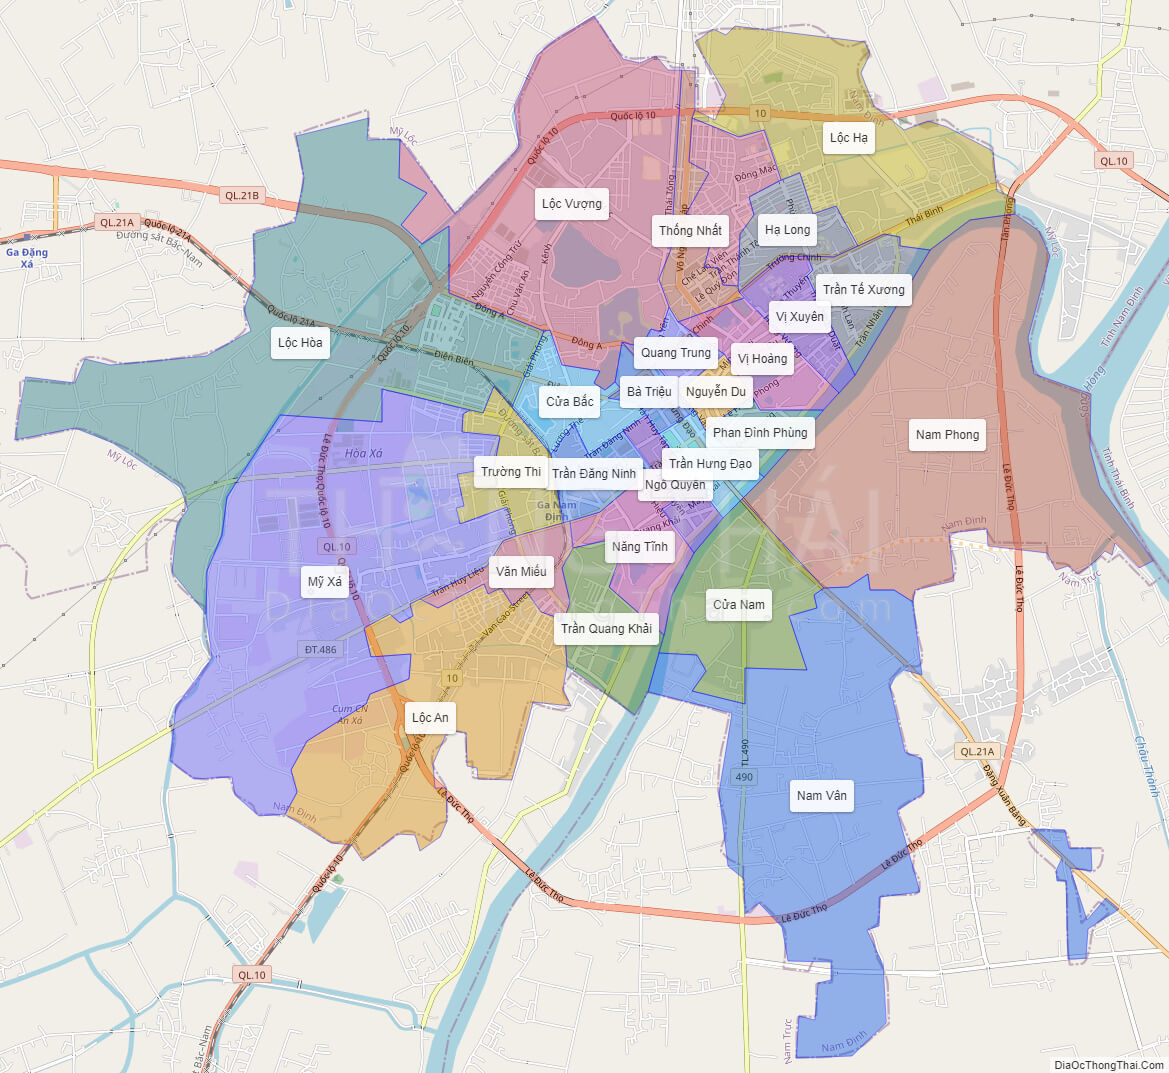 Bản đồ hành chính TP Nam Định: TP Nam Định hiện đang là trung tâm kinh tế của tỉnh, với nhiều cơ hội cho một cuộc sống tốt đẹp hơn. Bạn có thể xem qua bản đồ hành chính TP Nam Định để tìm hiểu về các khu đô thị, chi tiết cơ sở hạ tầng và những điểm đến giải trí thú vị trong thành phố này.